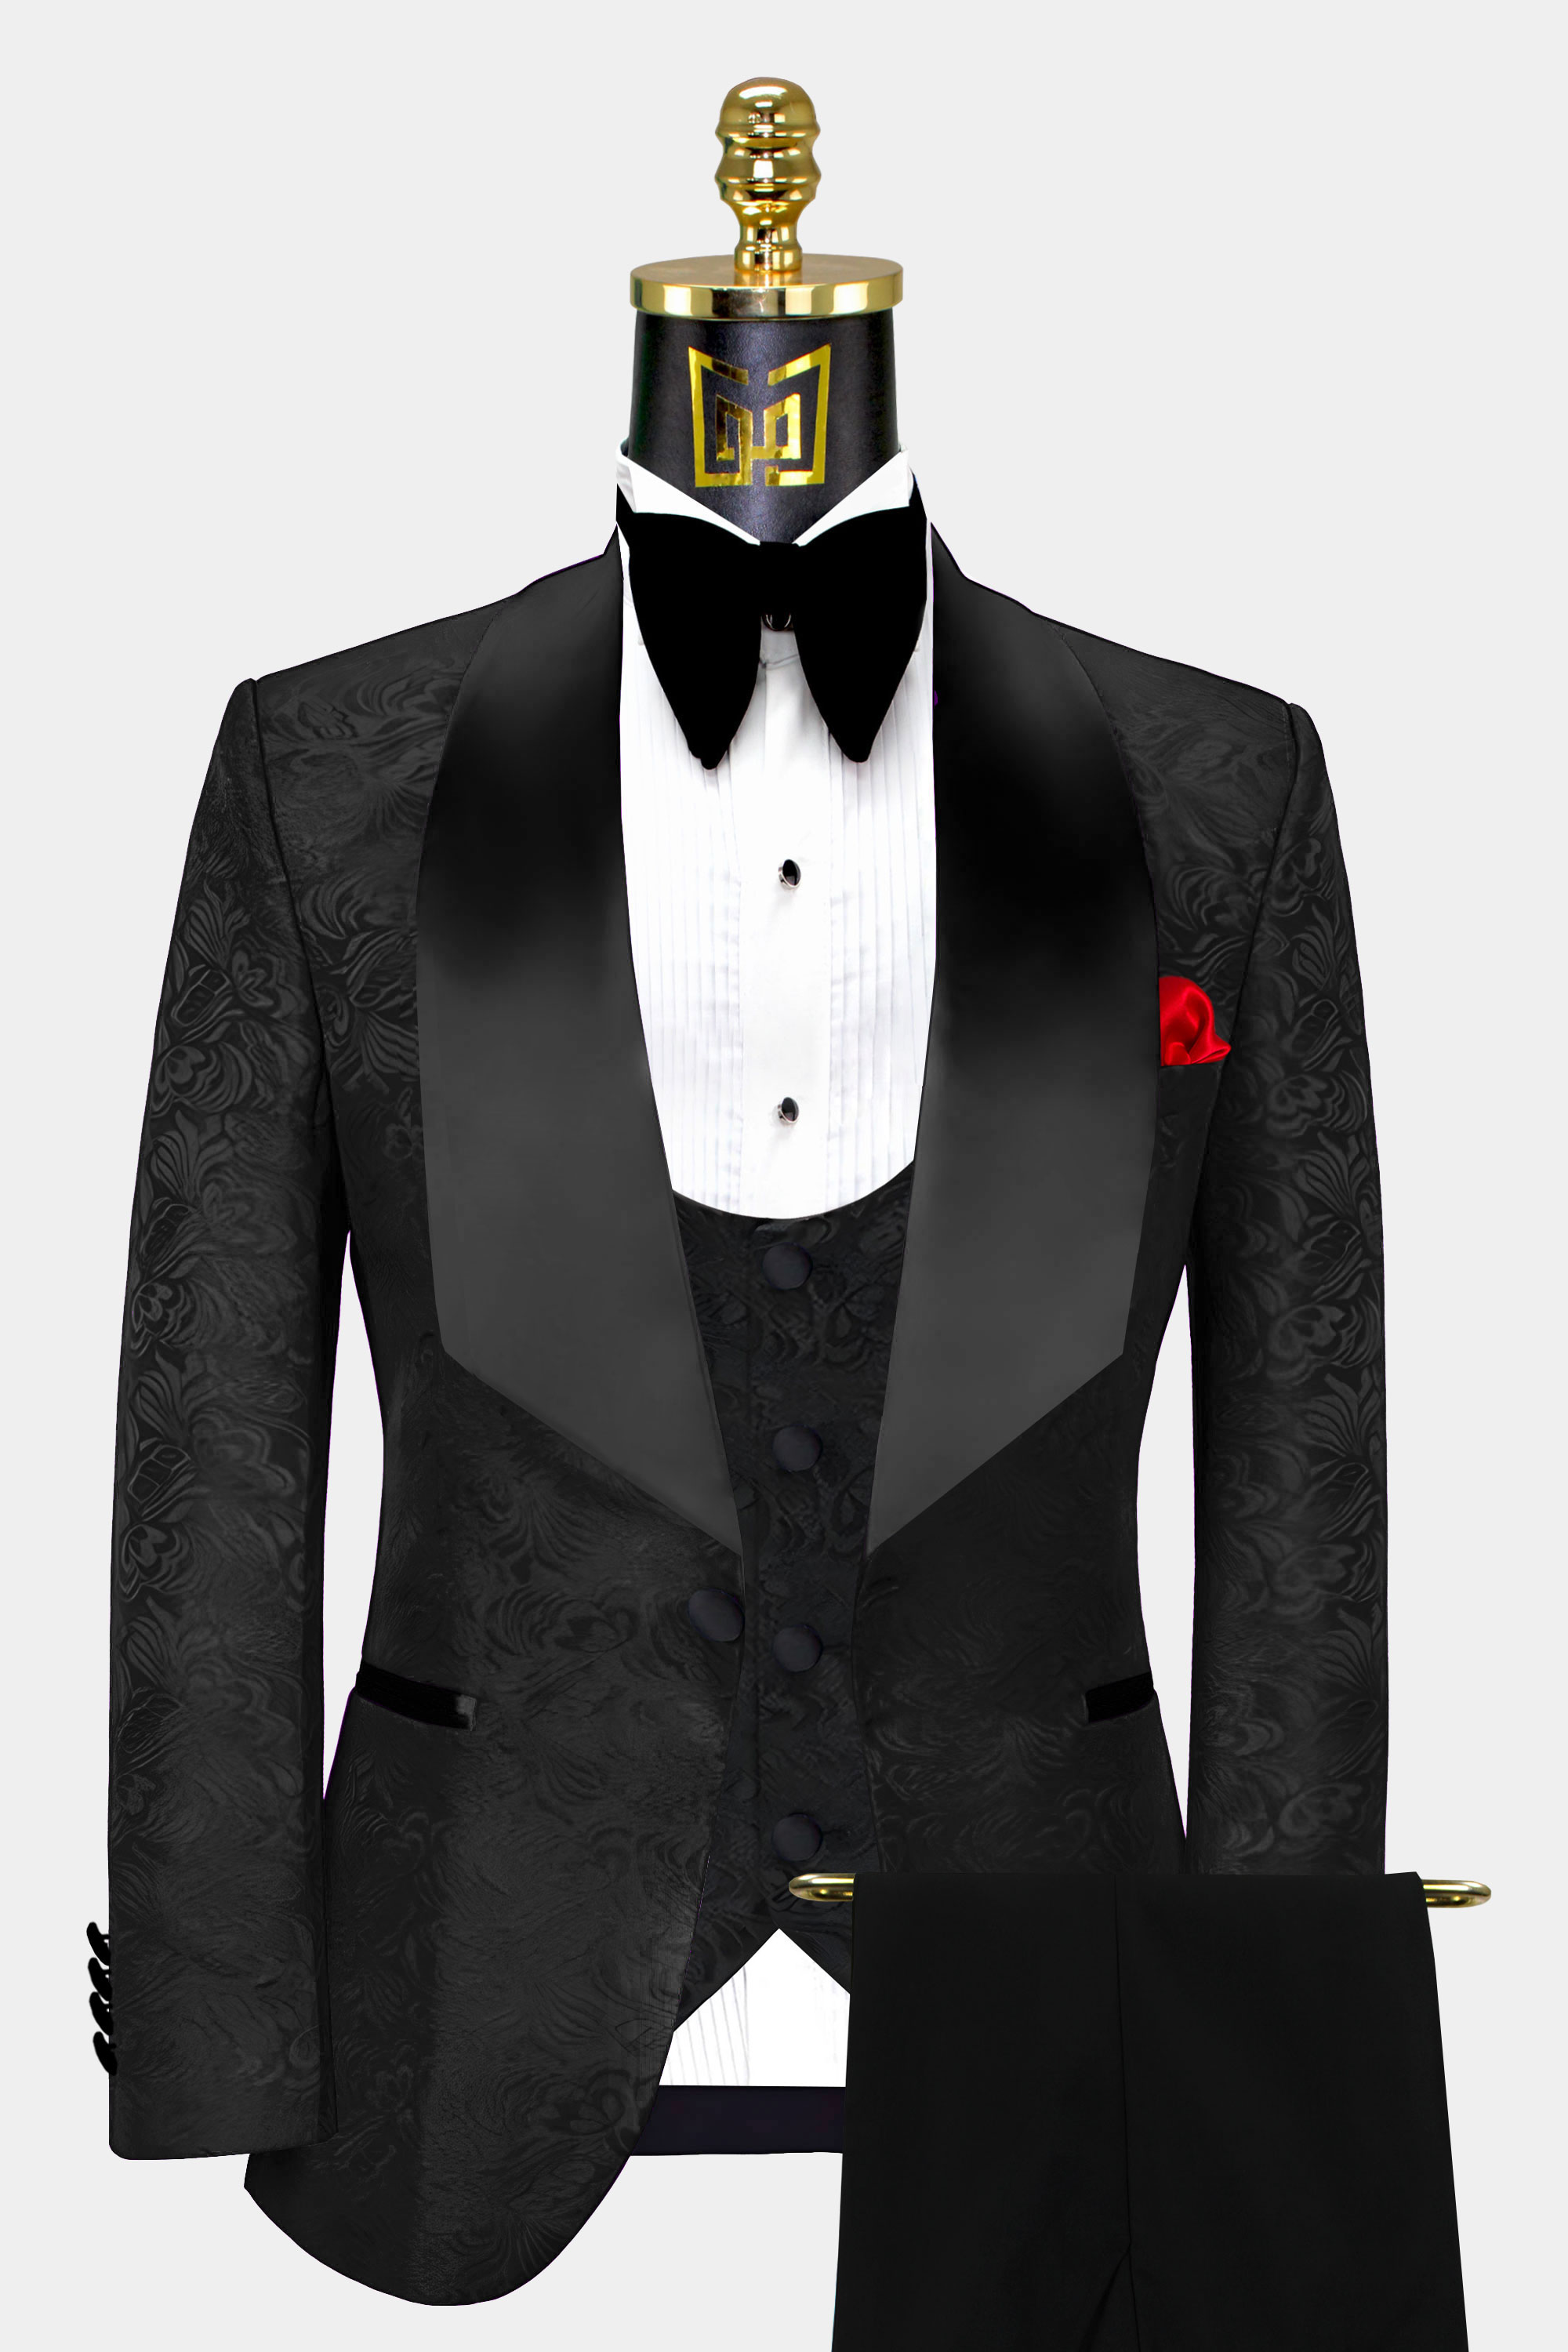 All Black Tuxedo Suit - 3 Pieces | Gentleman's Guru